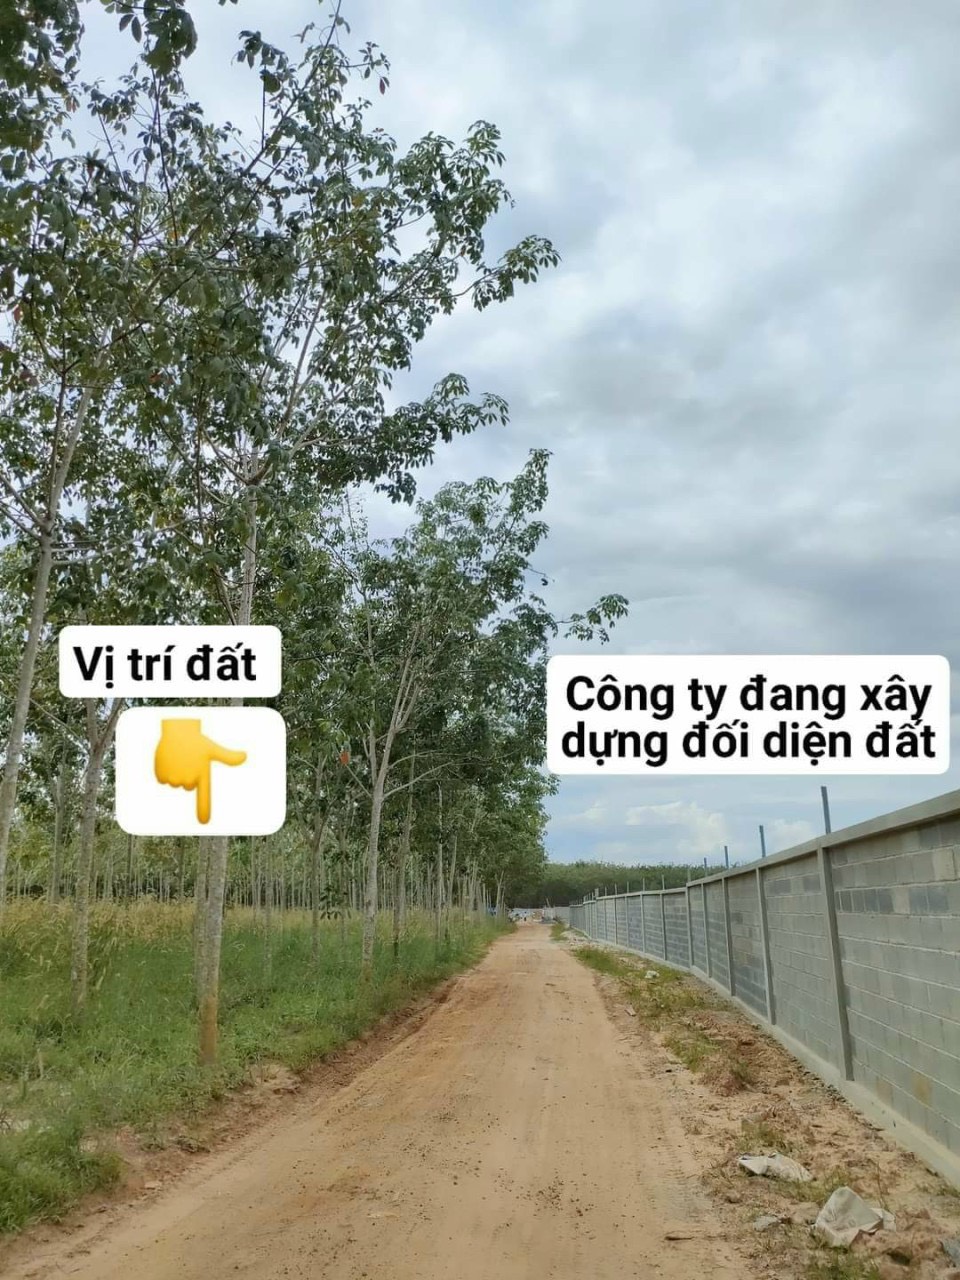 Bán lỗ về quê 380tr, đất Tân Biên, Tây Ninh